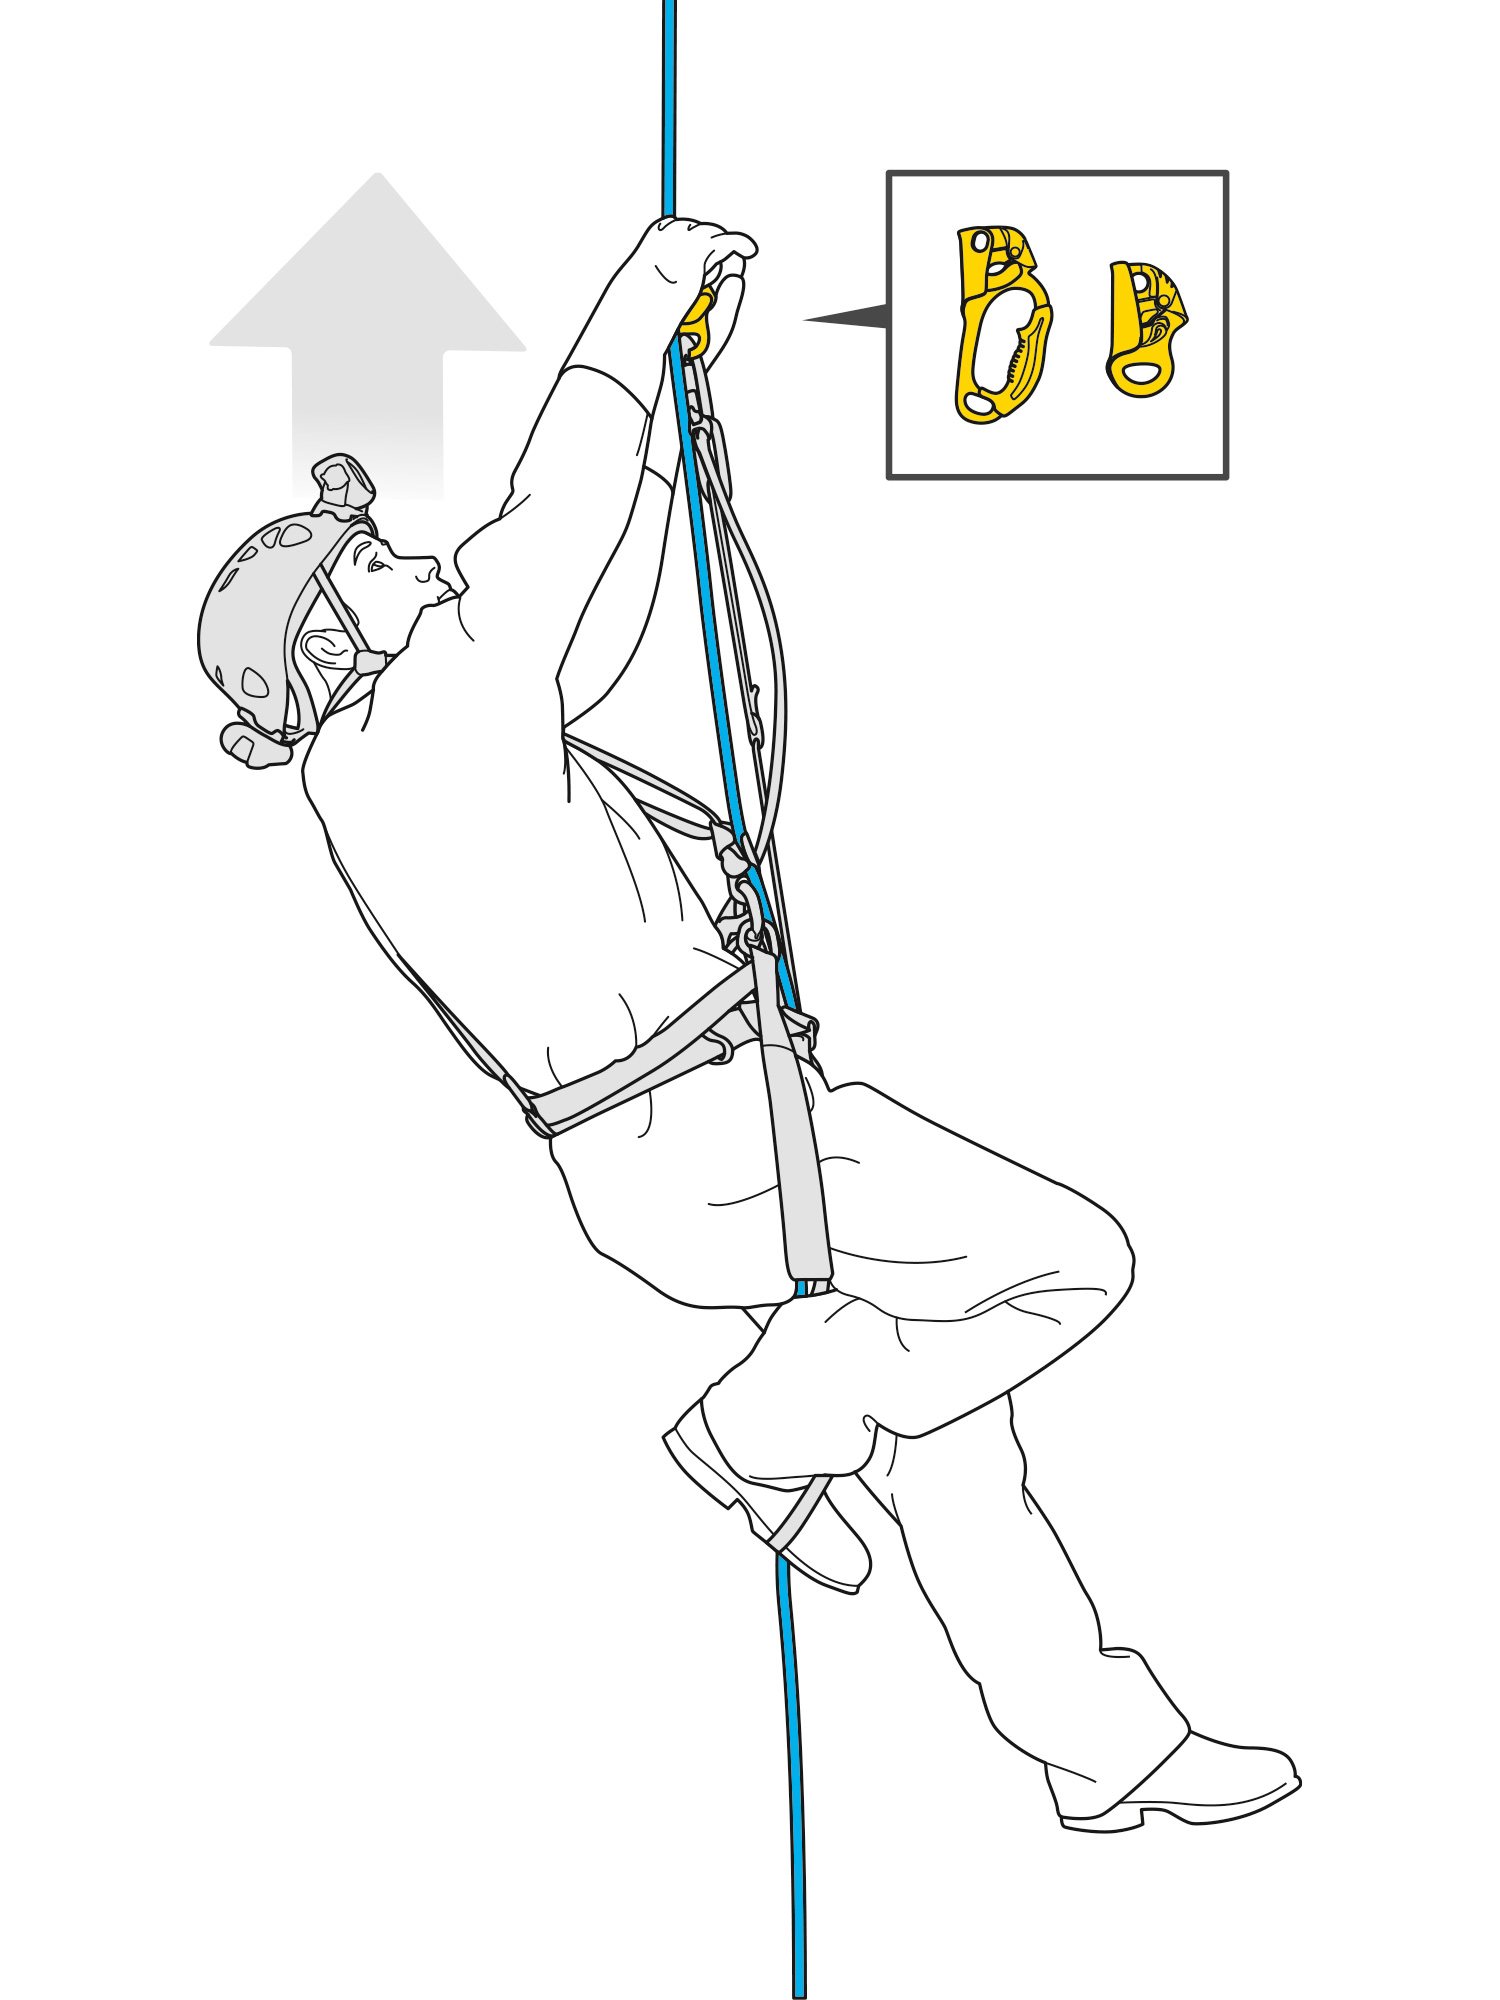 Ascenso por cuerda con un puño bloqueador instalado por encima del usuario.